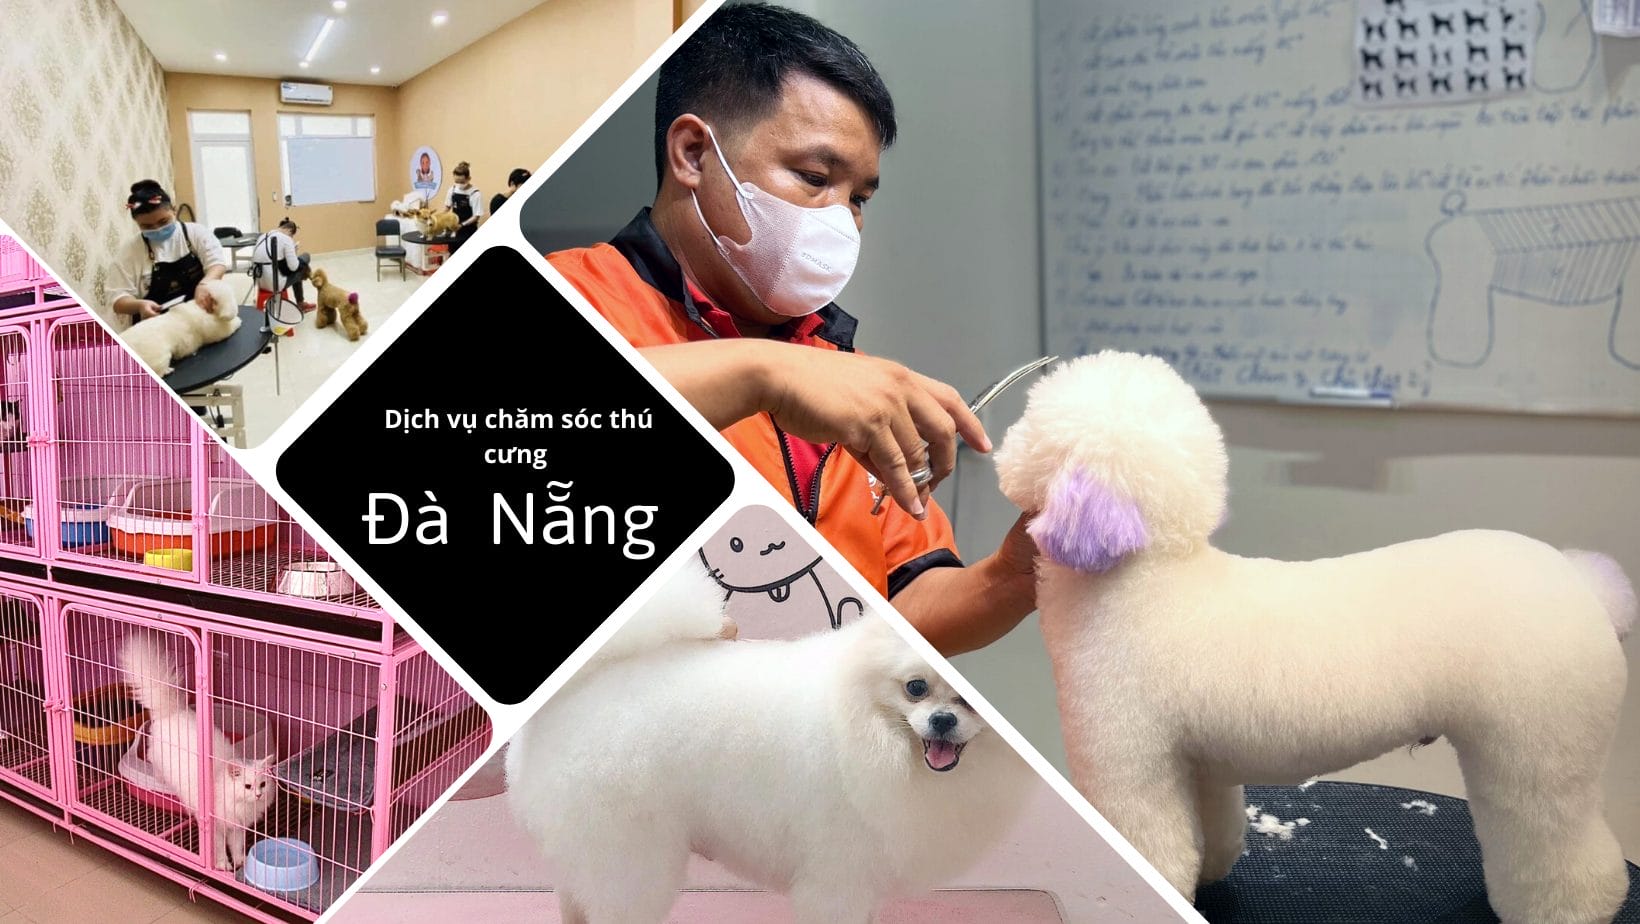 Top 11 dịch vụ chăm sóc thú cưng tại Đà Nẵng uy tín